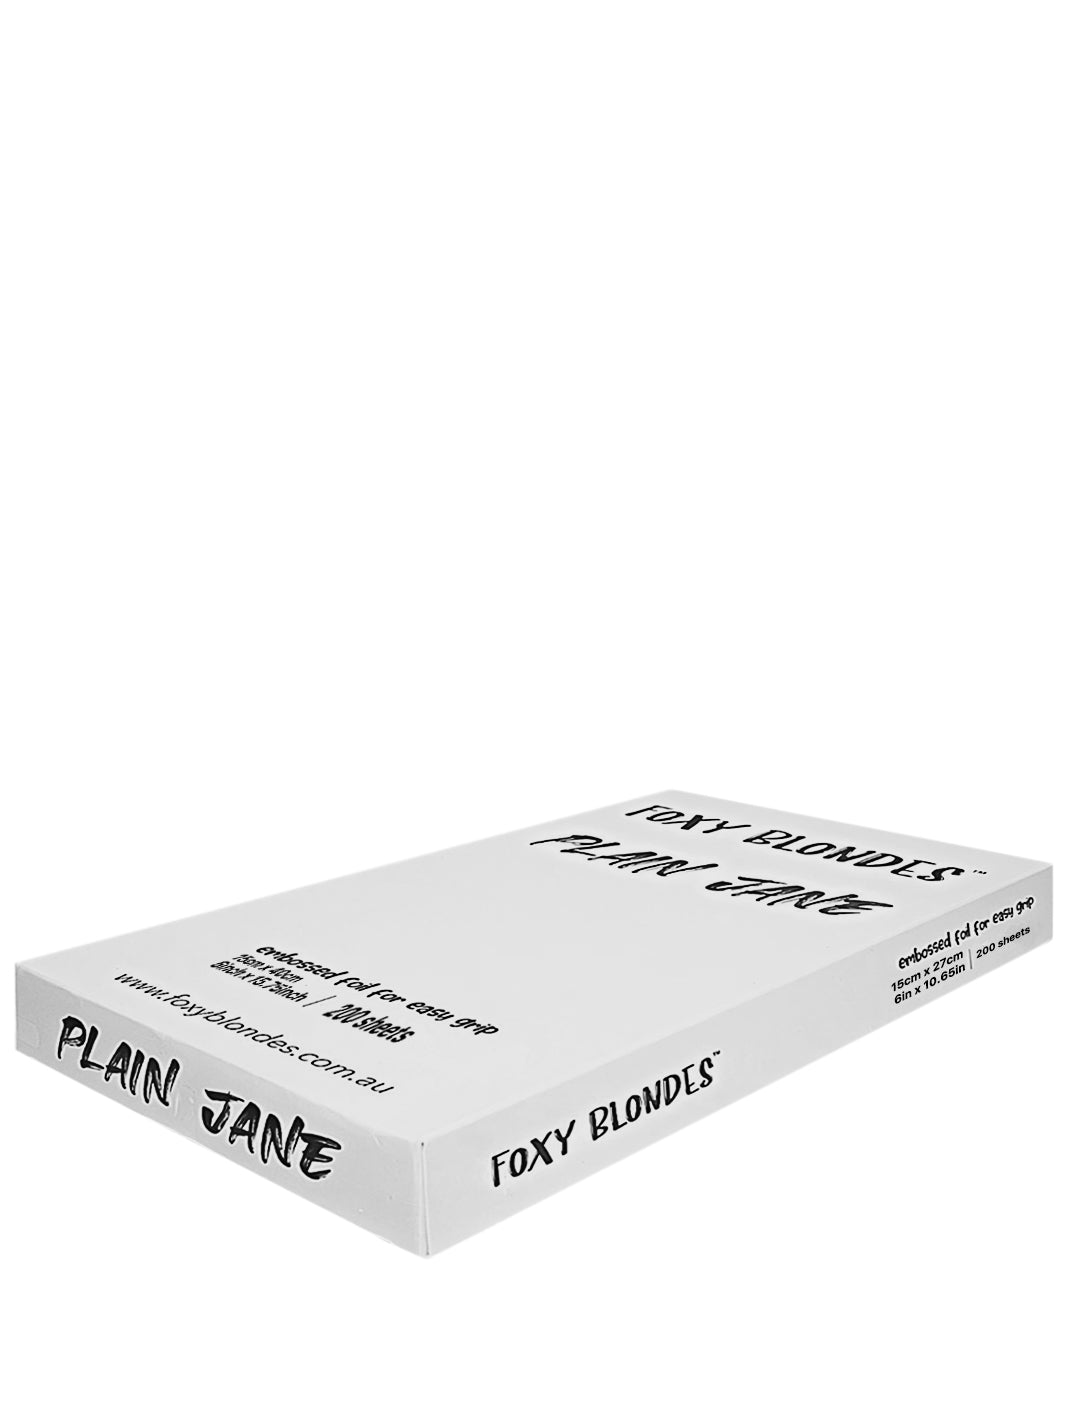 Foxy Blondes - Plain Jane Pre-Cut Foils